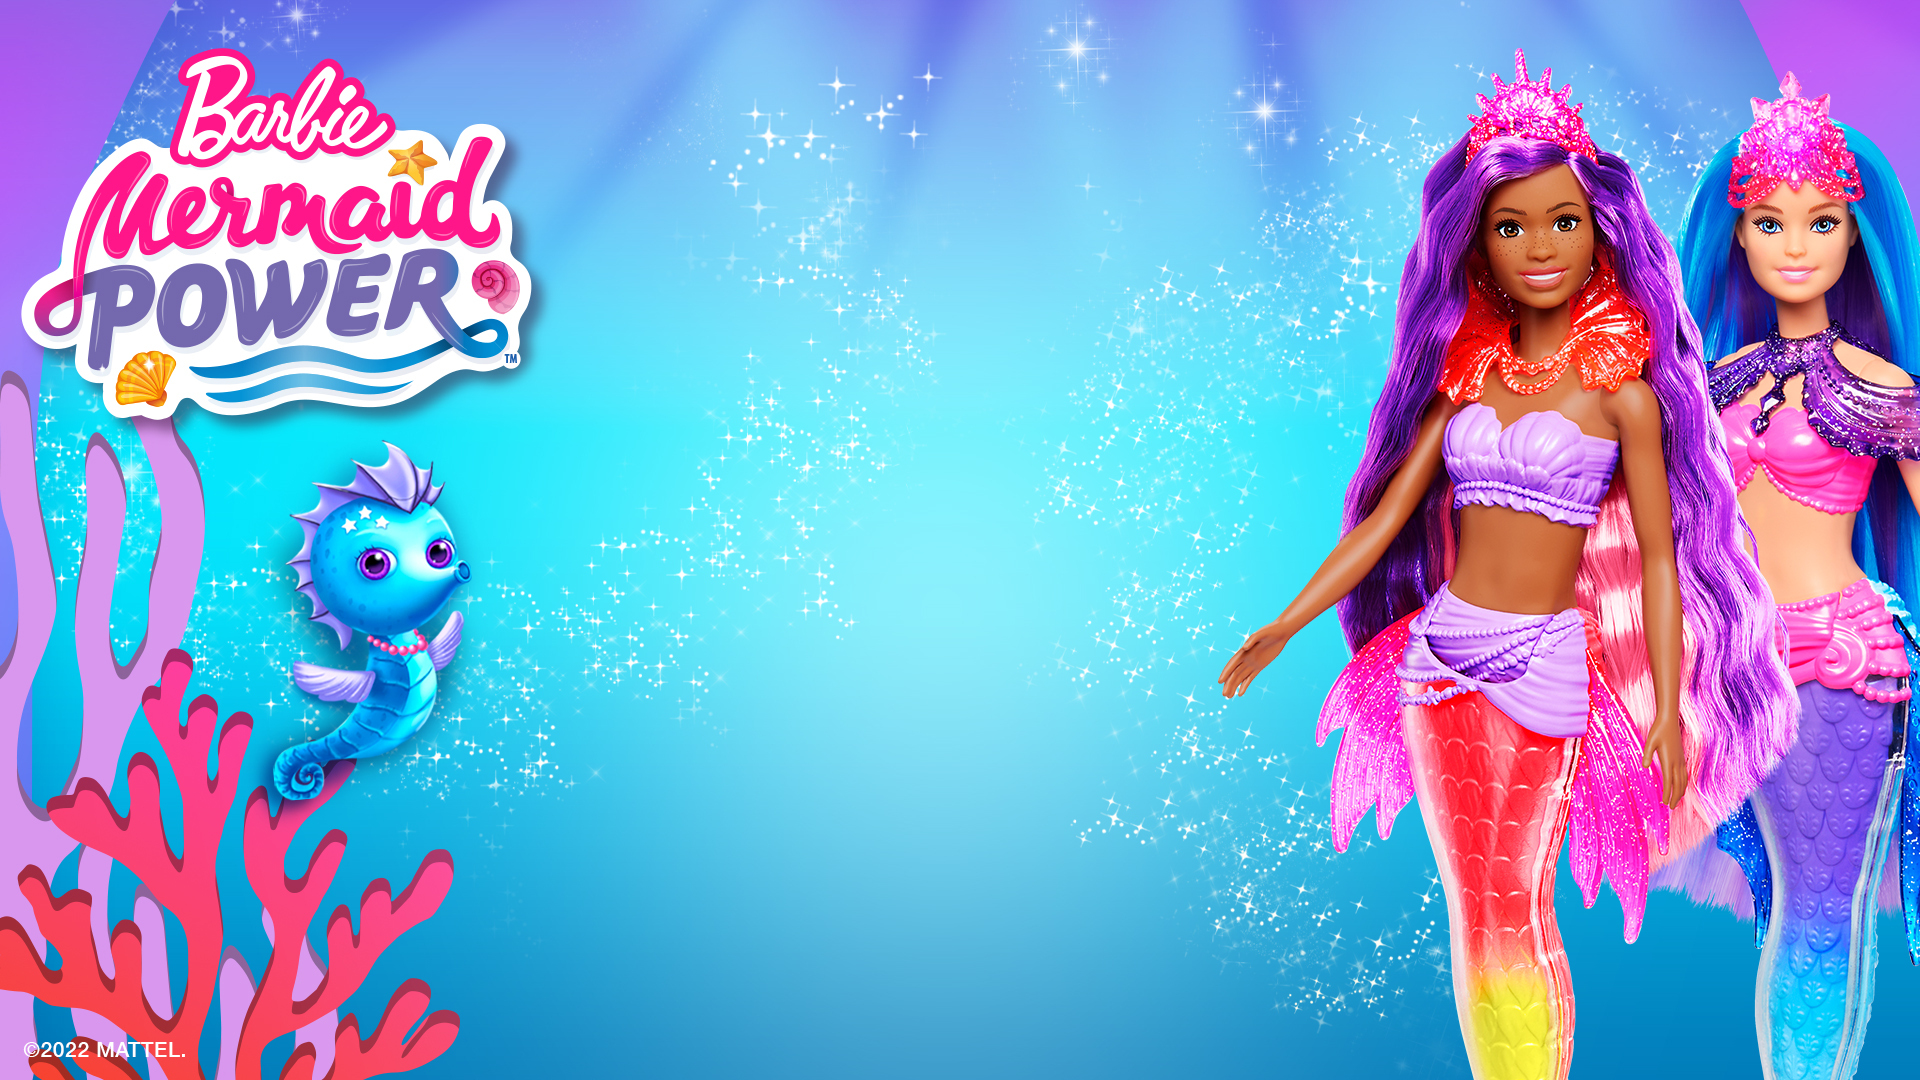 Barbie Mermaid Power Barbie “Brooklyn” Roberts Mermaid Doll with